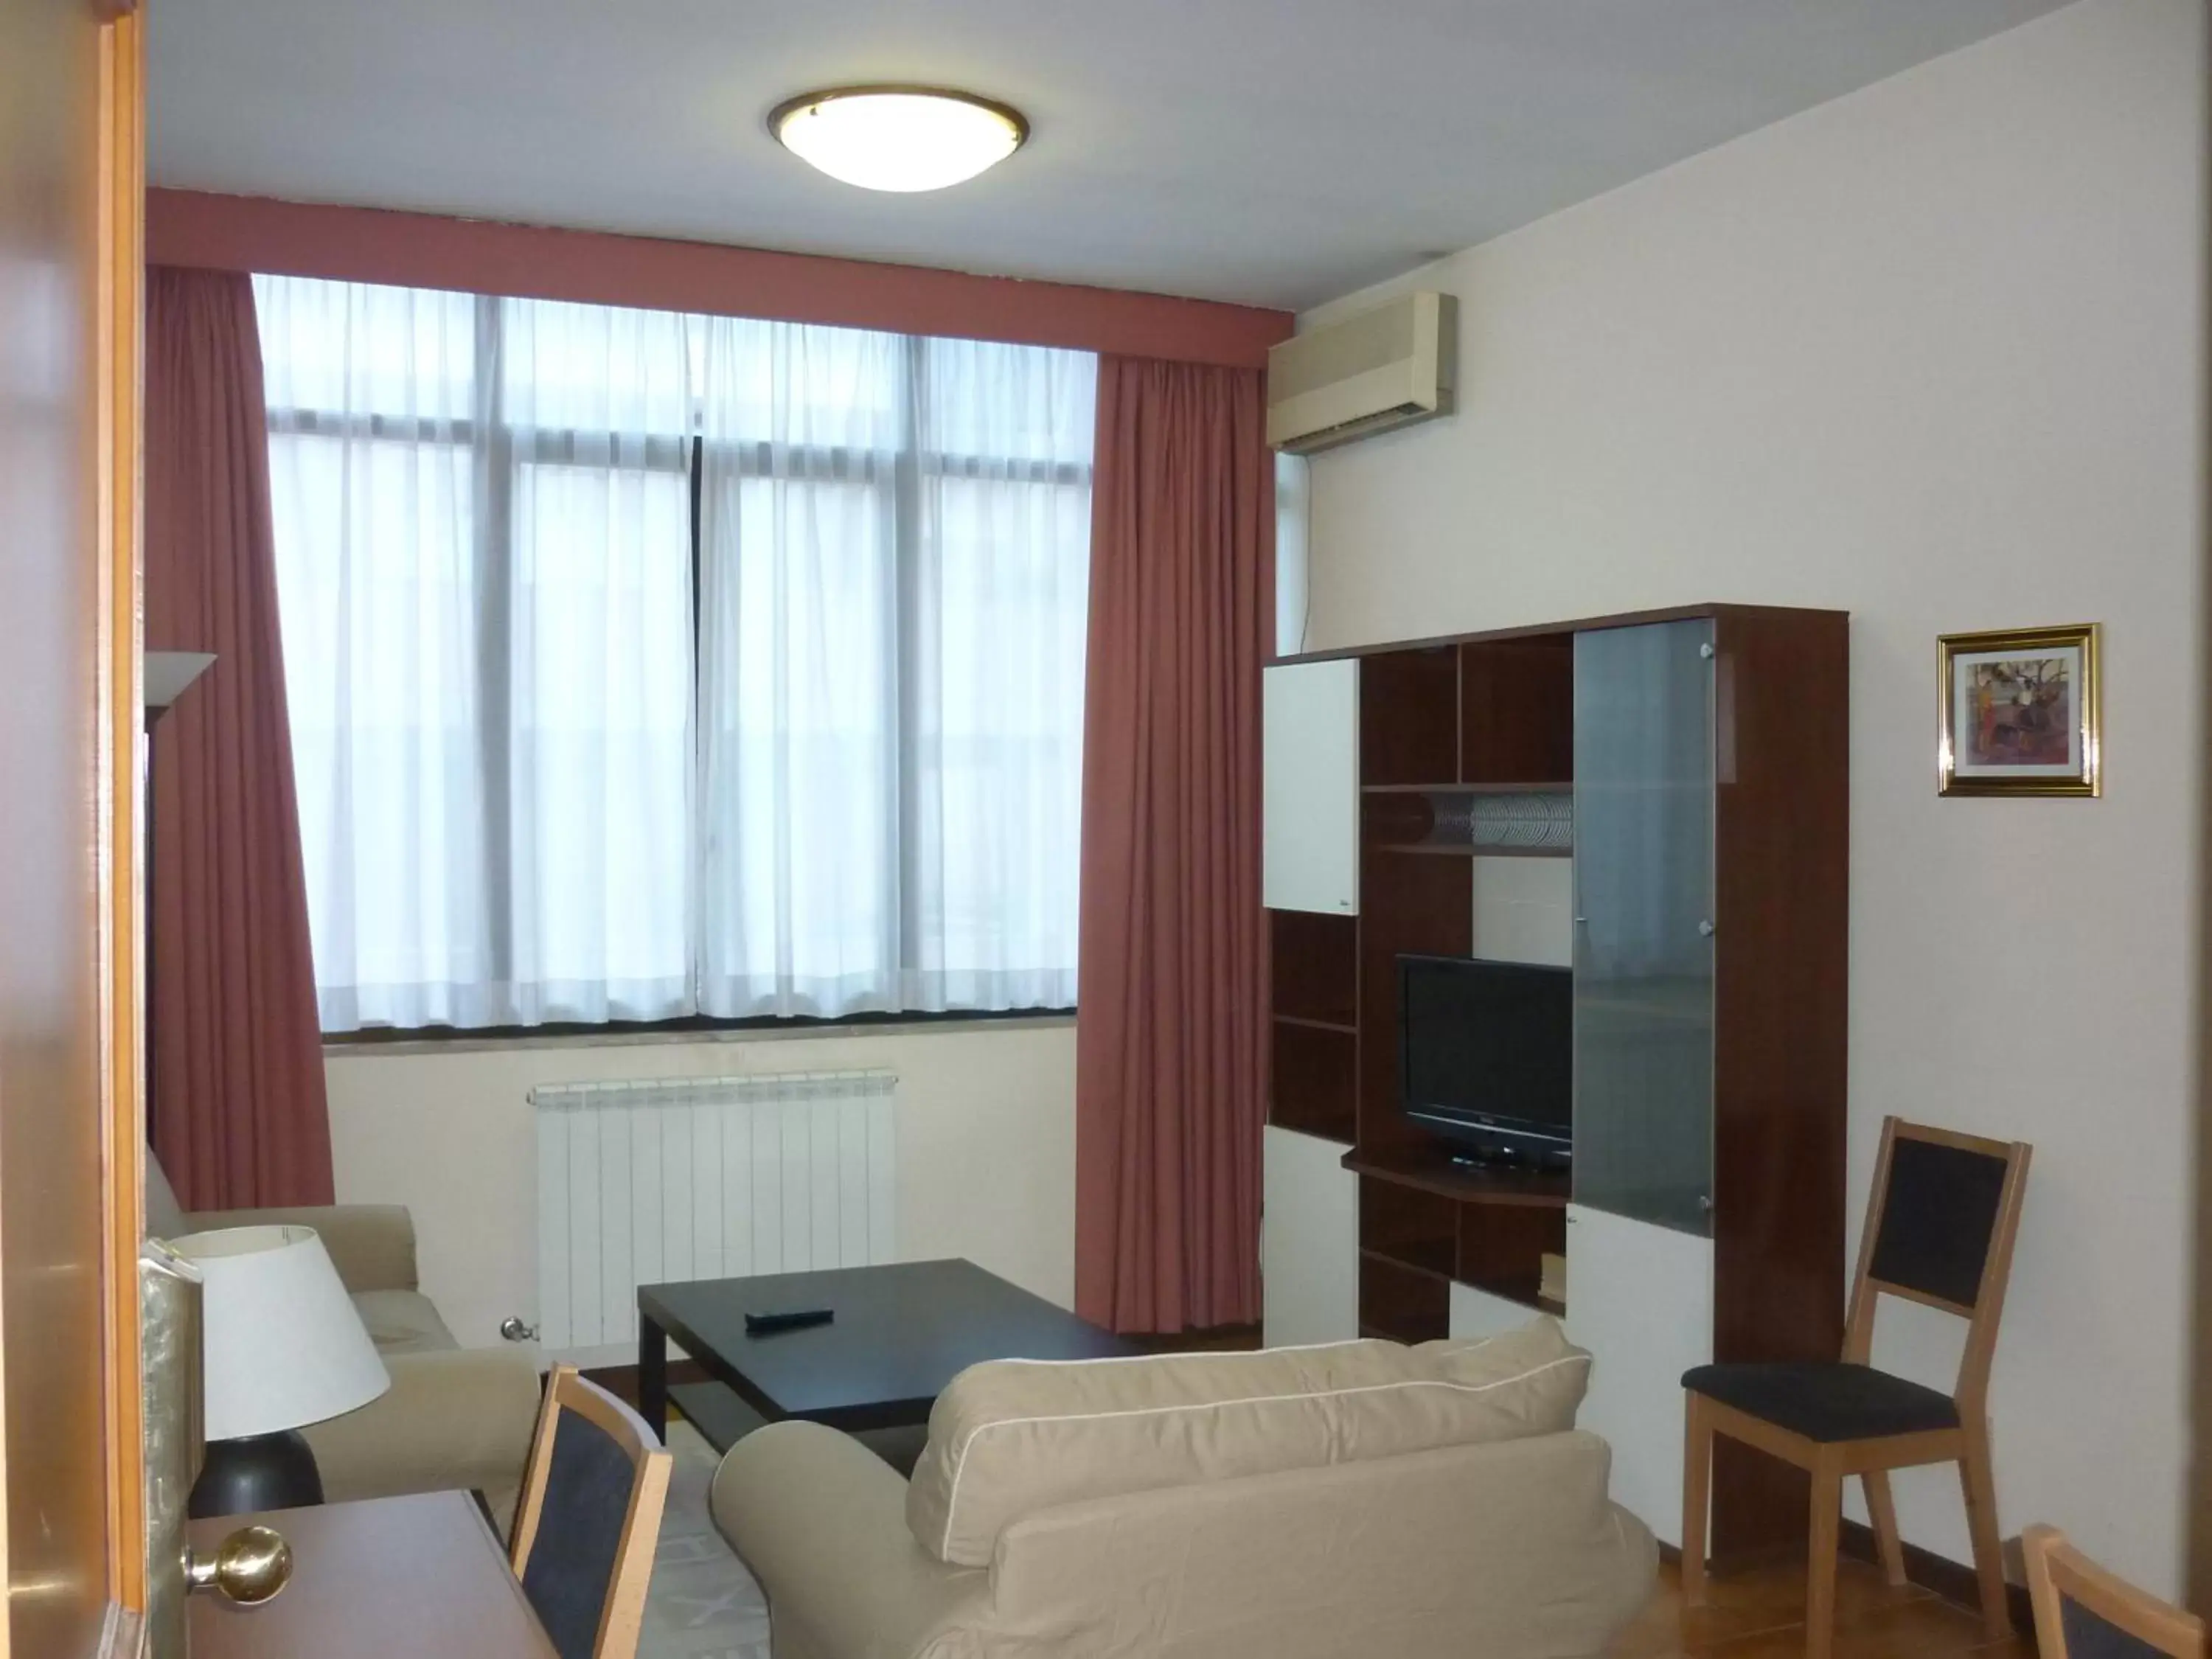 Apartment with Terrace - Top Floor in Eur Nir Residence